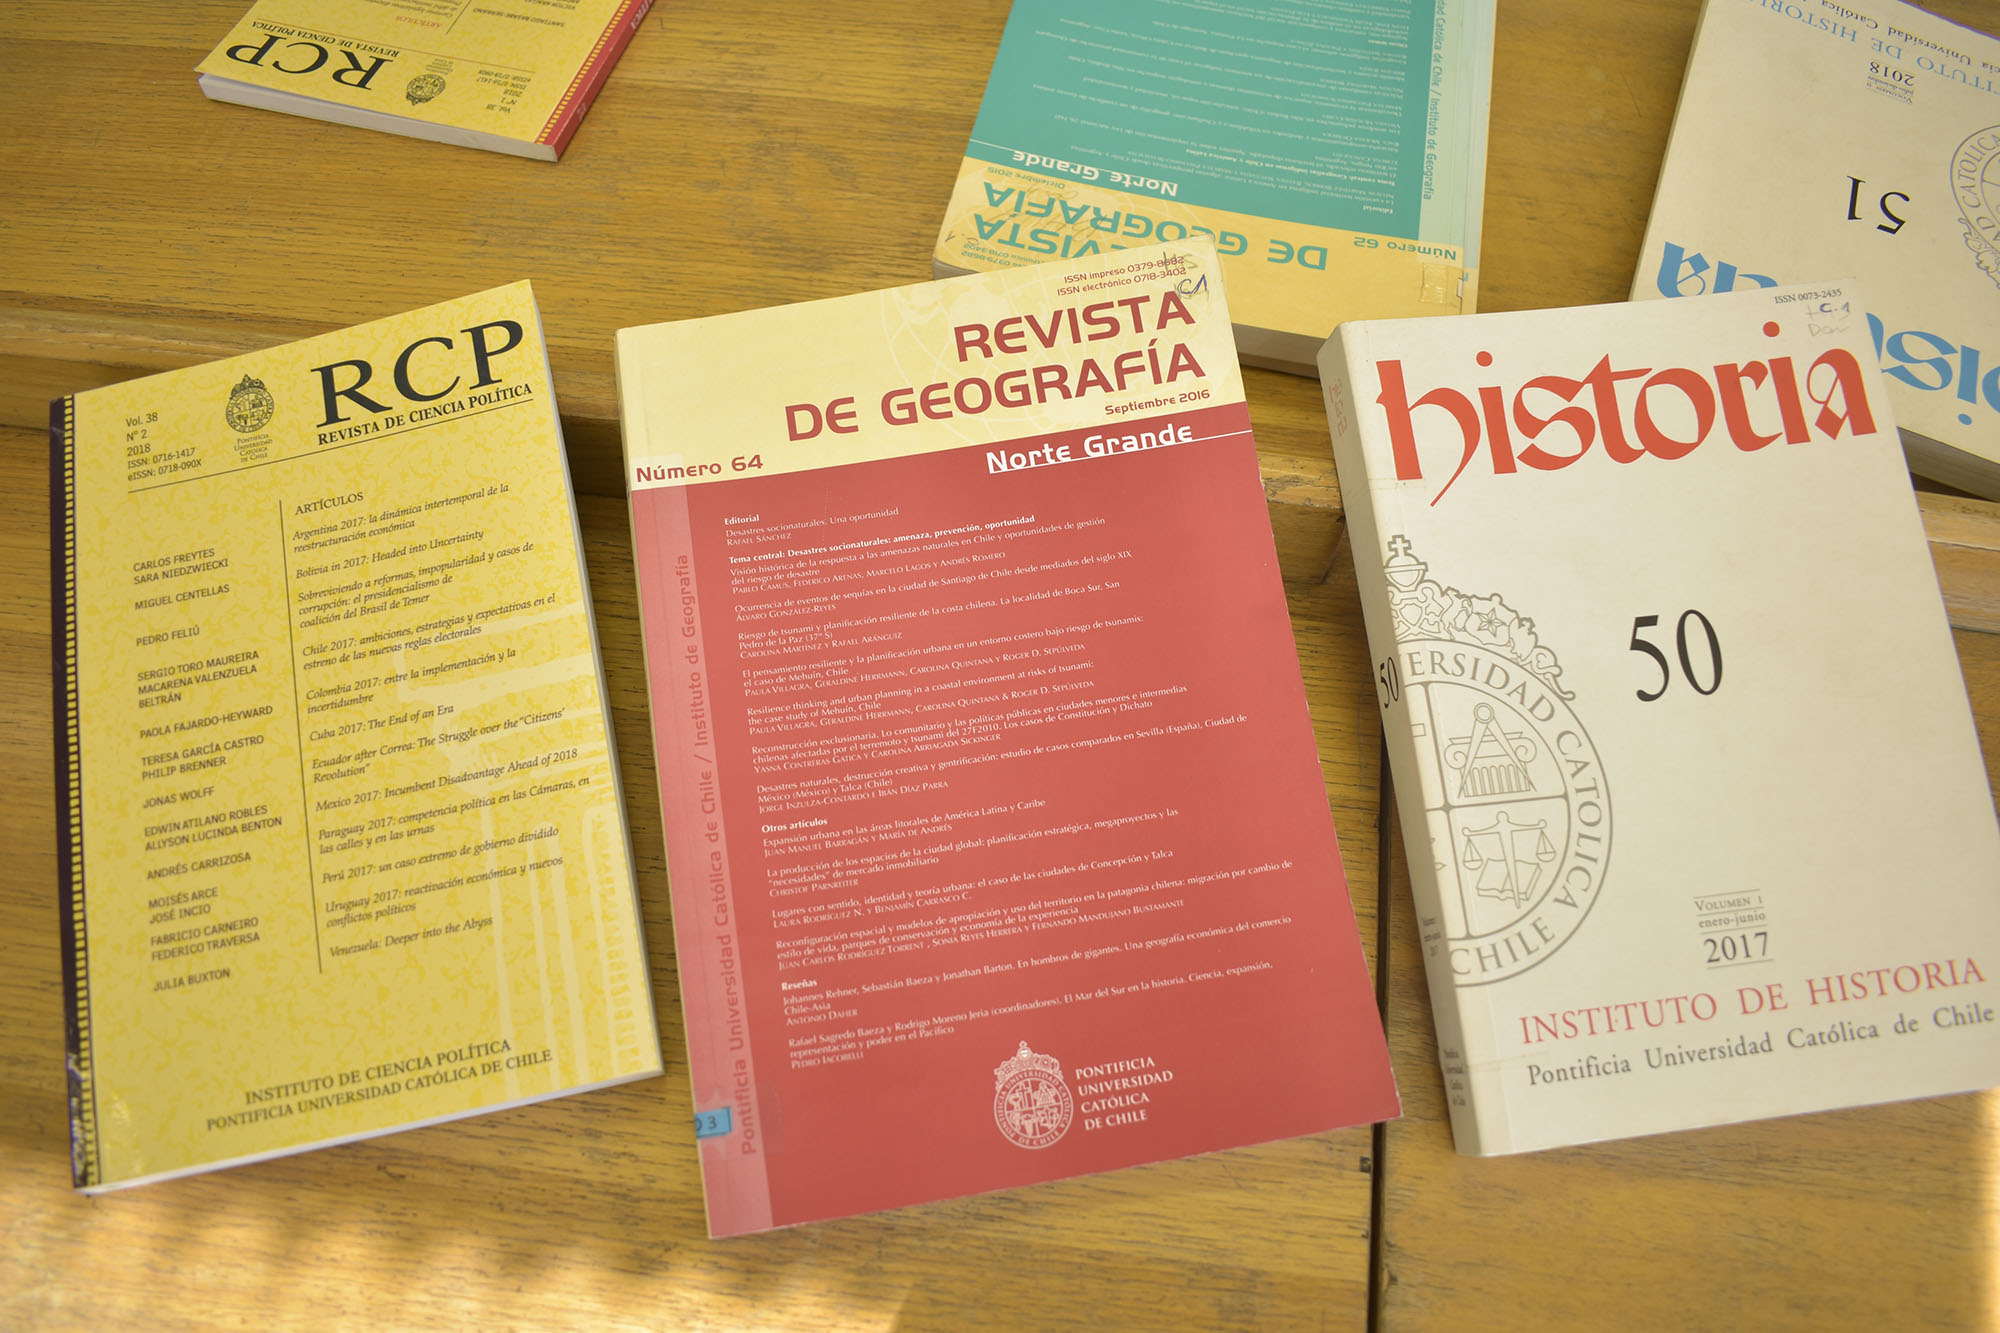 Fotografía de volúmenes antiguos impresos de las Revistas UC: Revista de Ciencia Política, Revista de Geografía y Revista Historia.